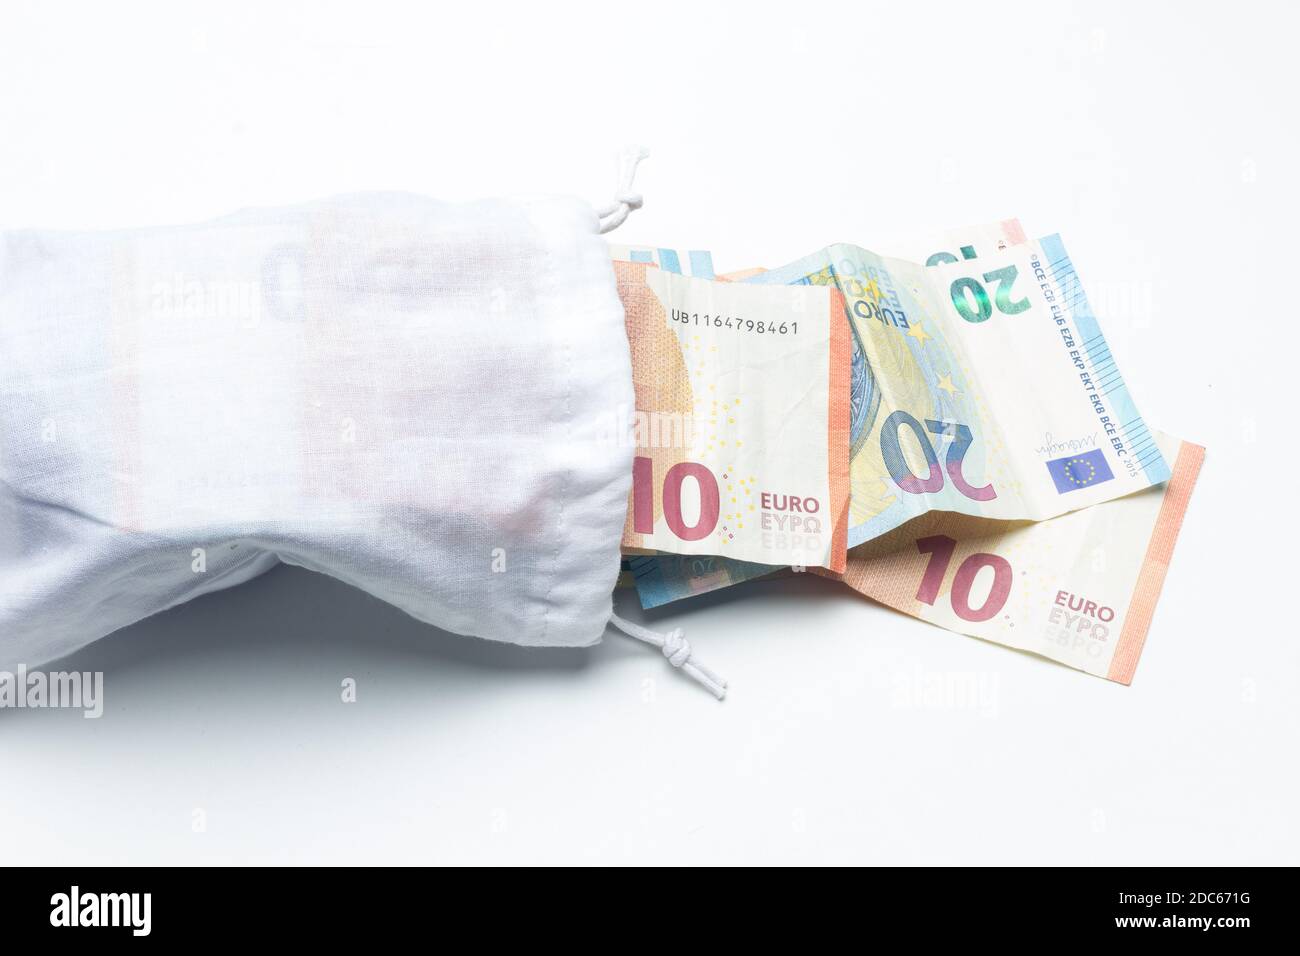 Borsa piena di soldi in euro, risparmiando al di fuori del sistema bancario tradizionale. Banconote in euro all'interno di un sacchetto bianco. Riciclaggio di denaro. Foto Stock